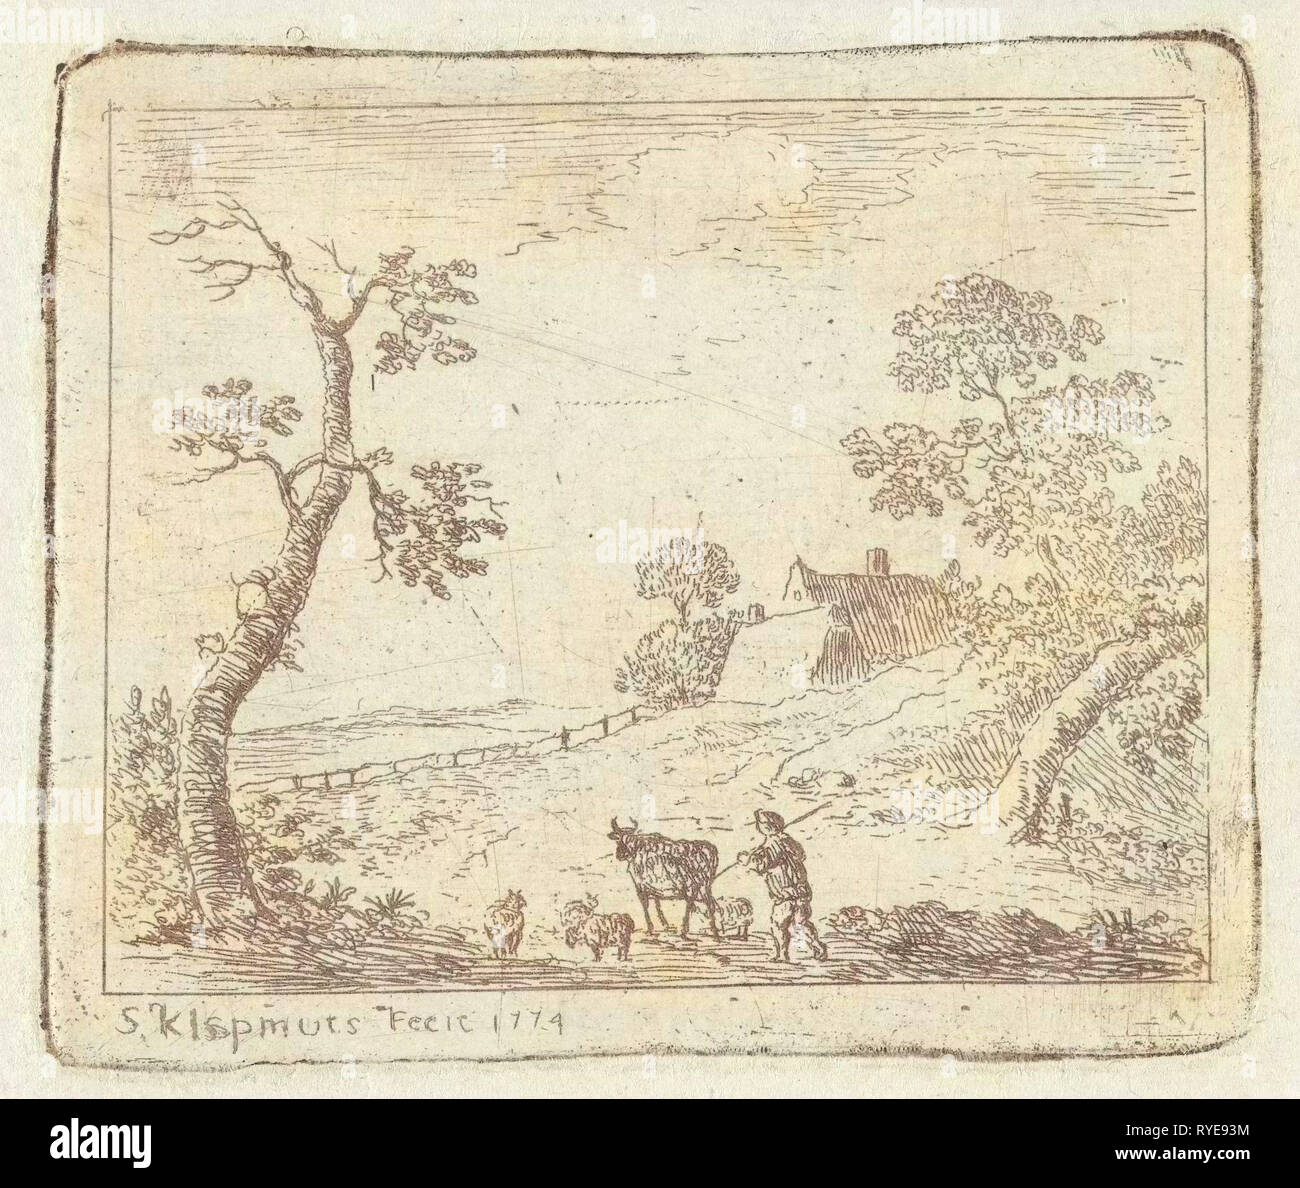 Landscape with a Shepherd, Simon Klapmuts, 1774 Stock Photo